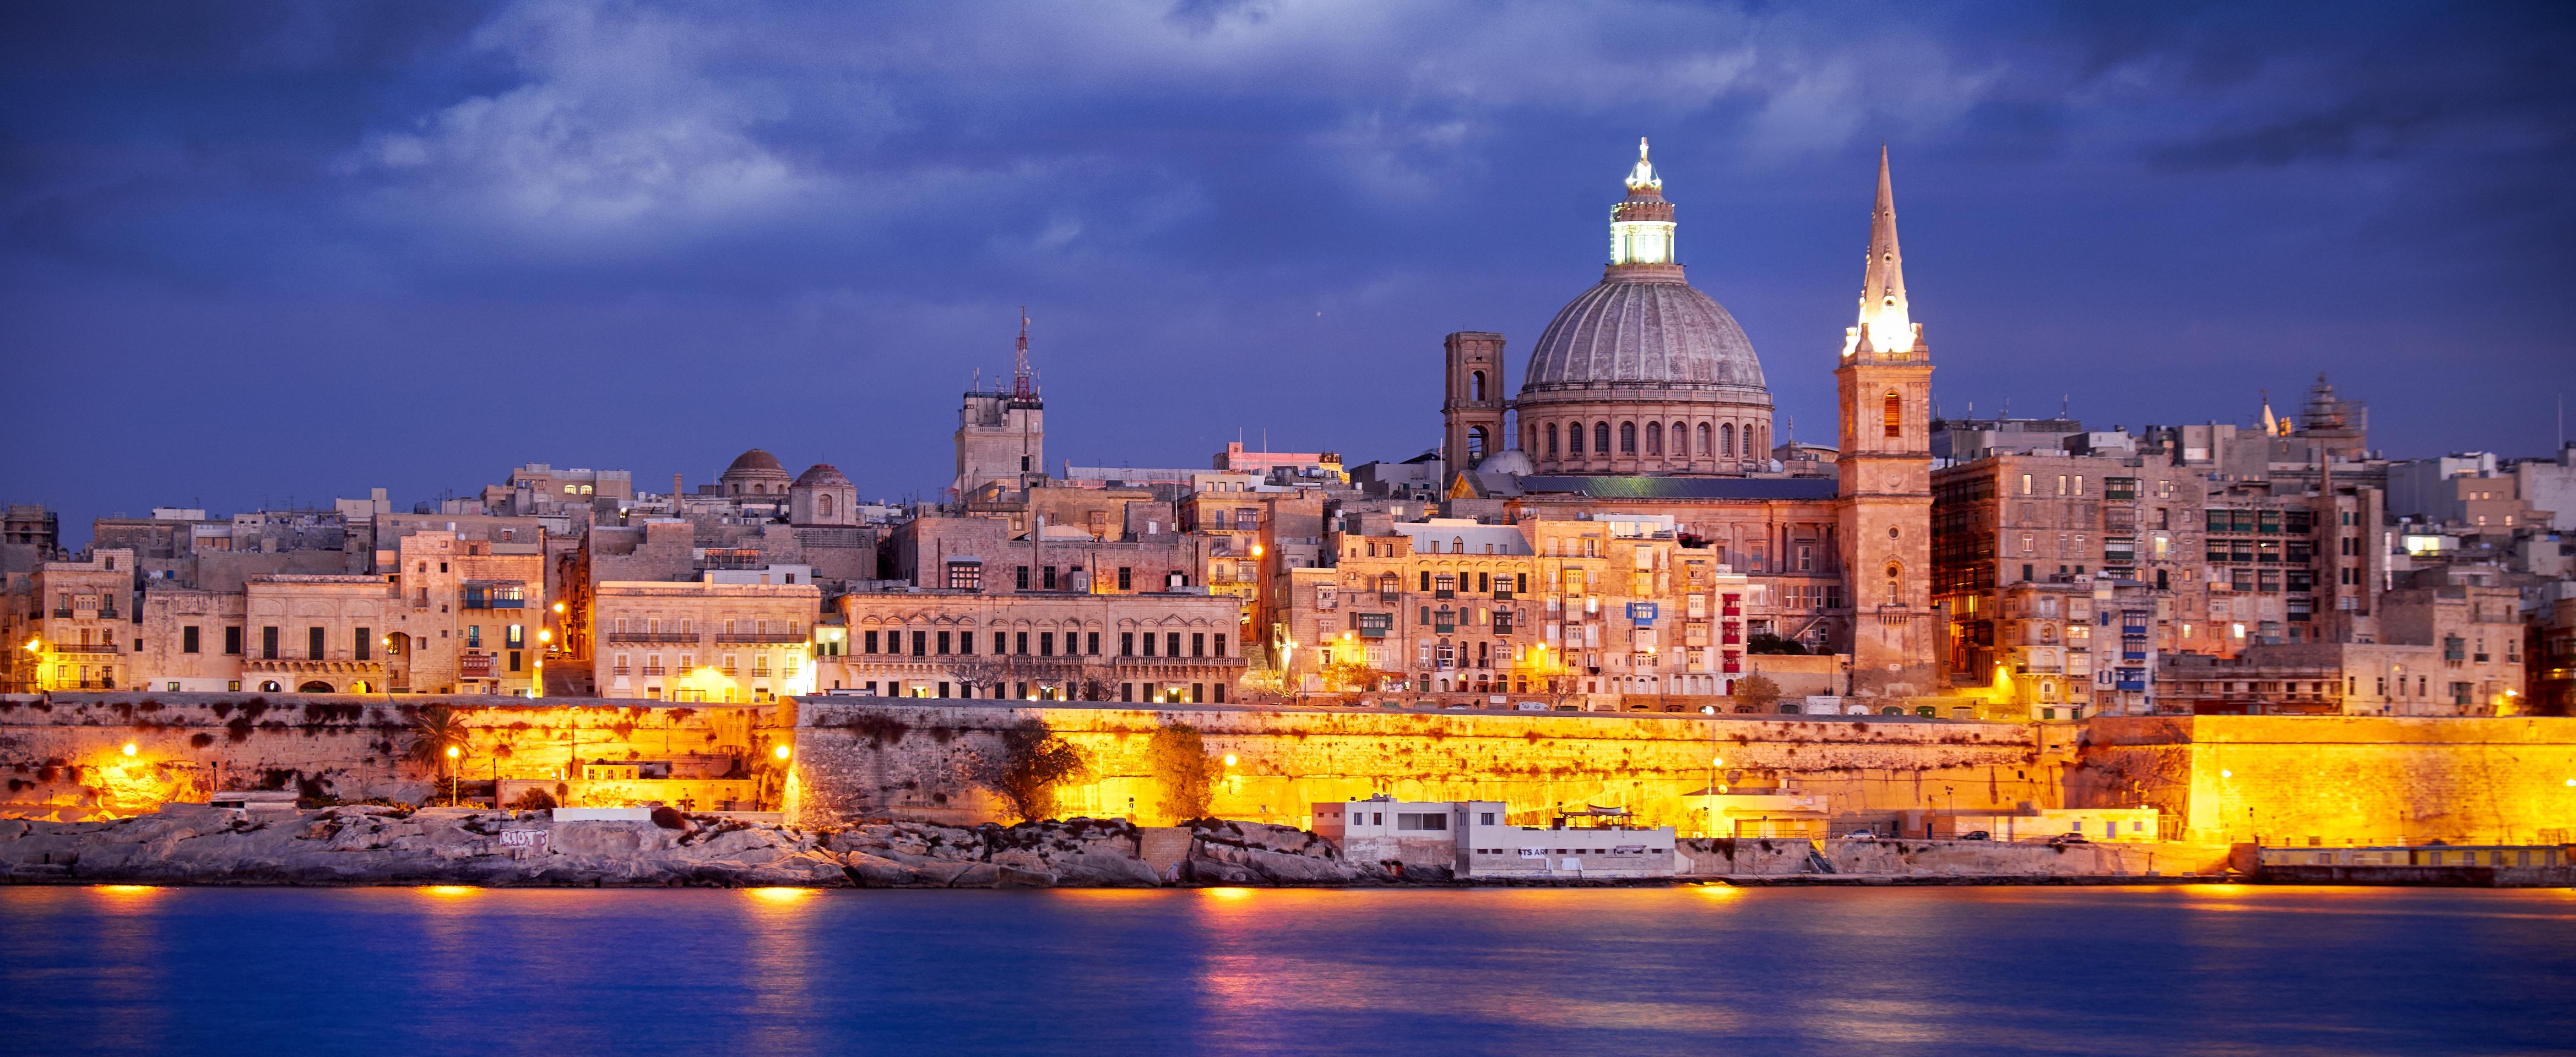 Visite nocturne de Malte en Français: La Valette, Rabat et Mdina - transferts inclus